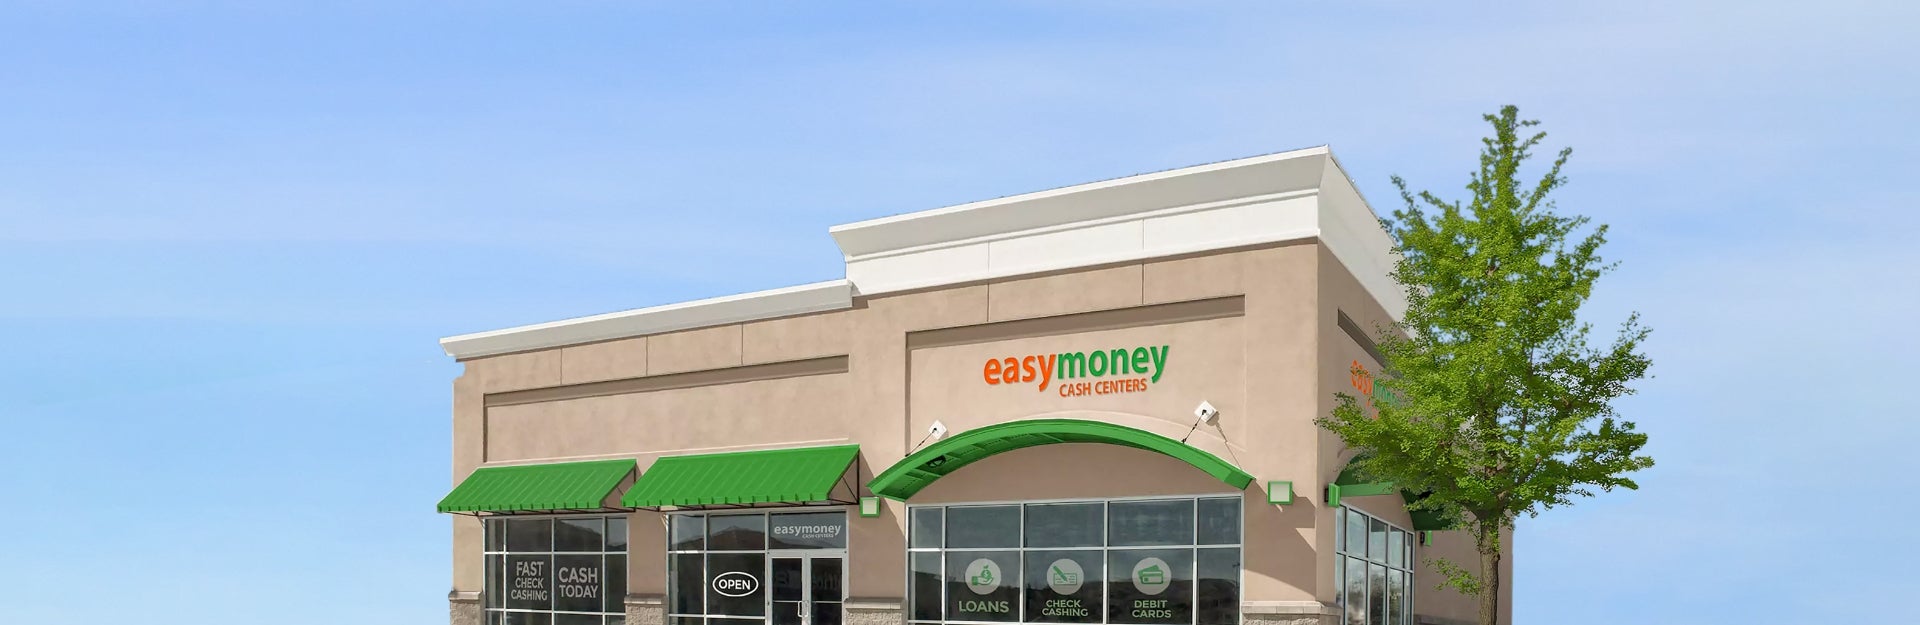 easymoney Financial Services